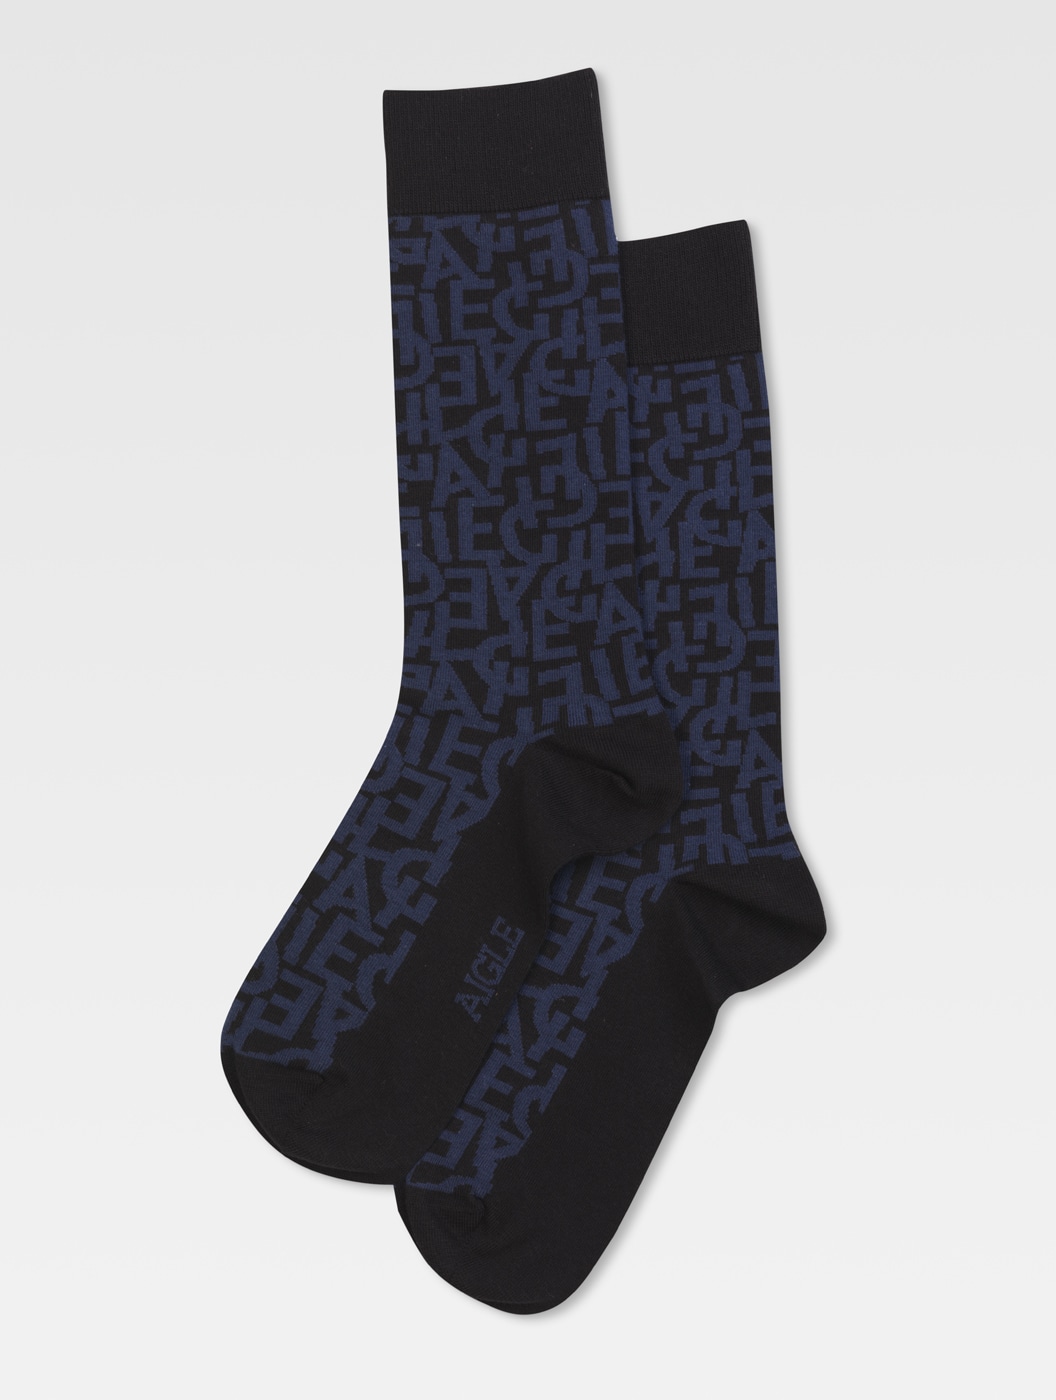 Aigle - Unisex printed socks print - Atada | AIGLE